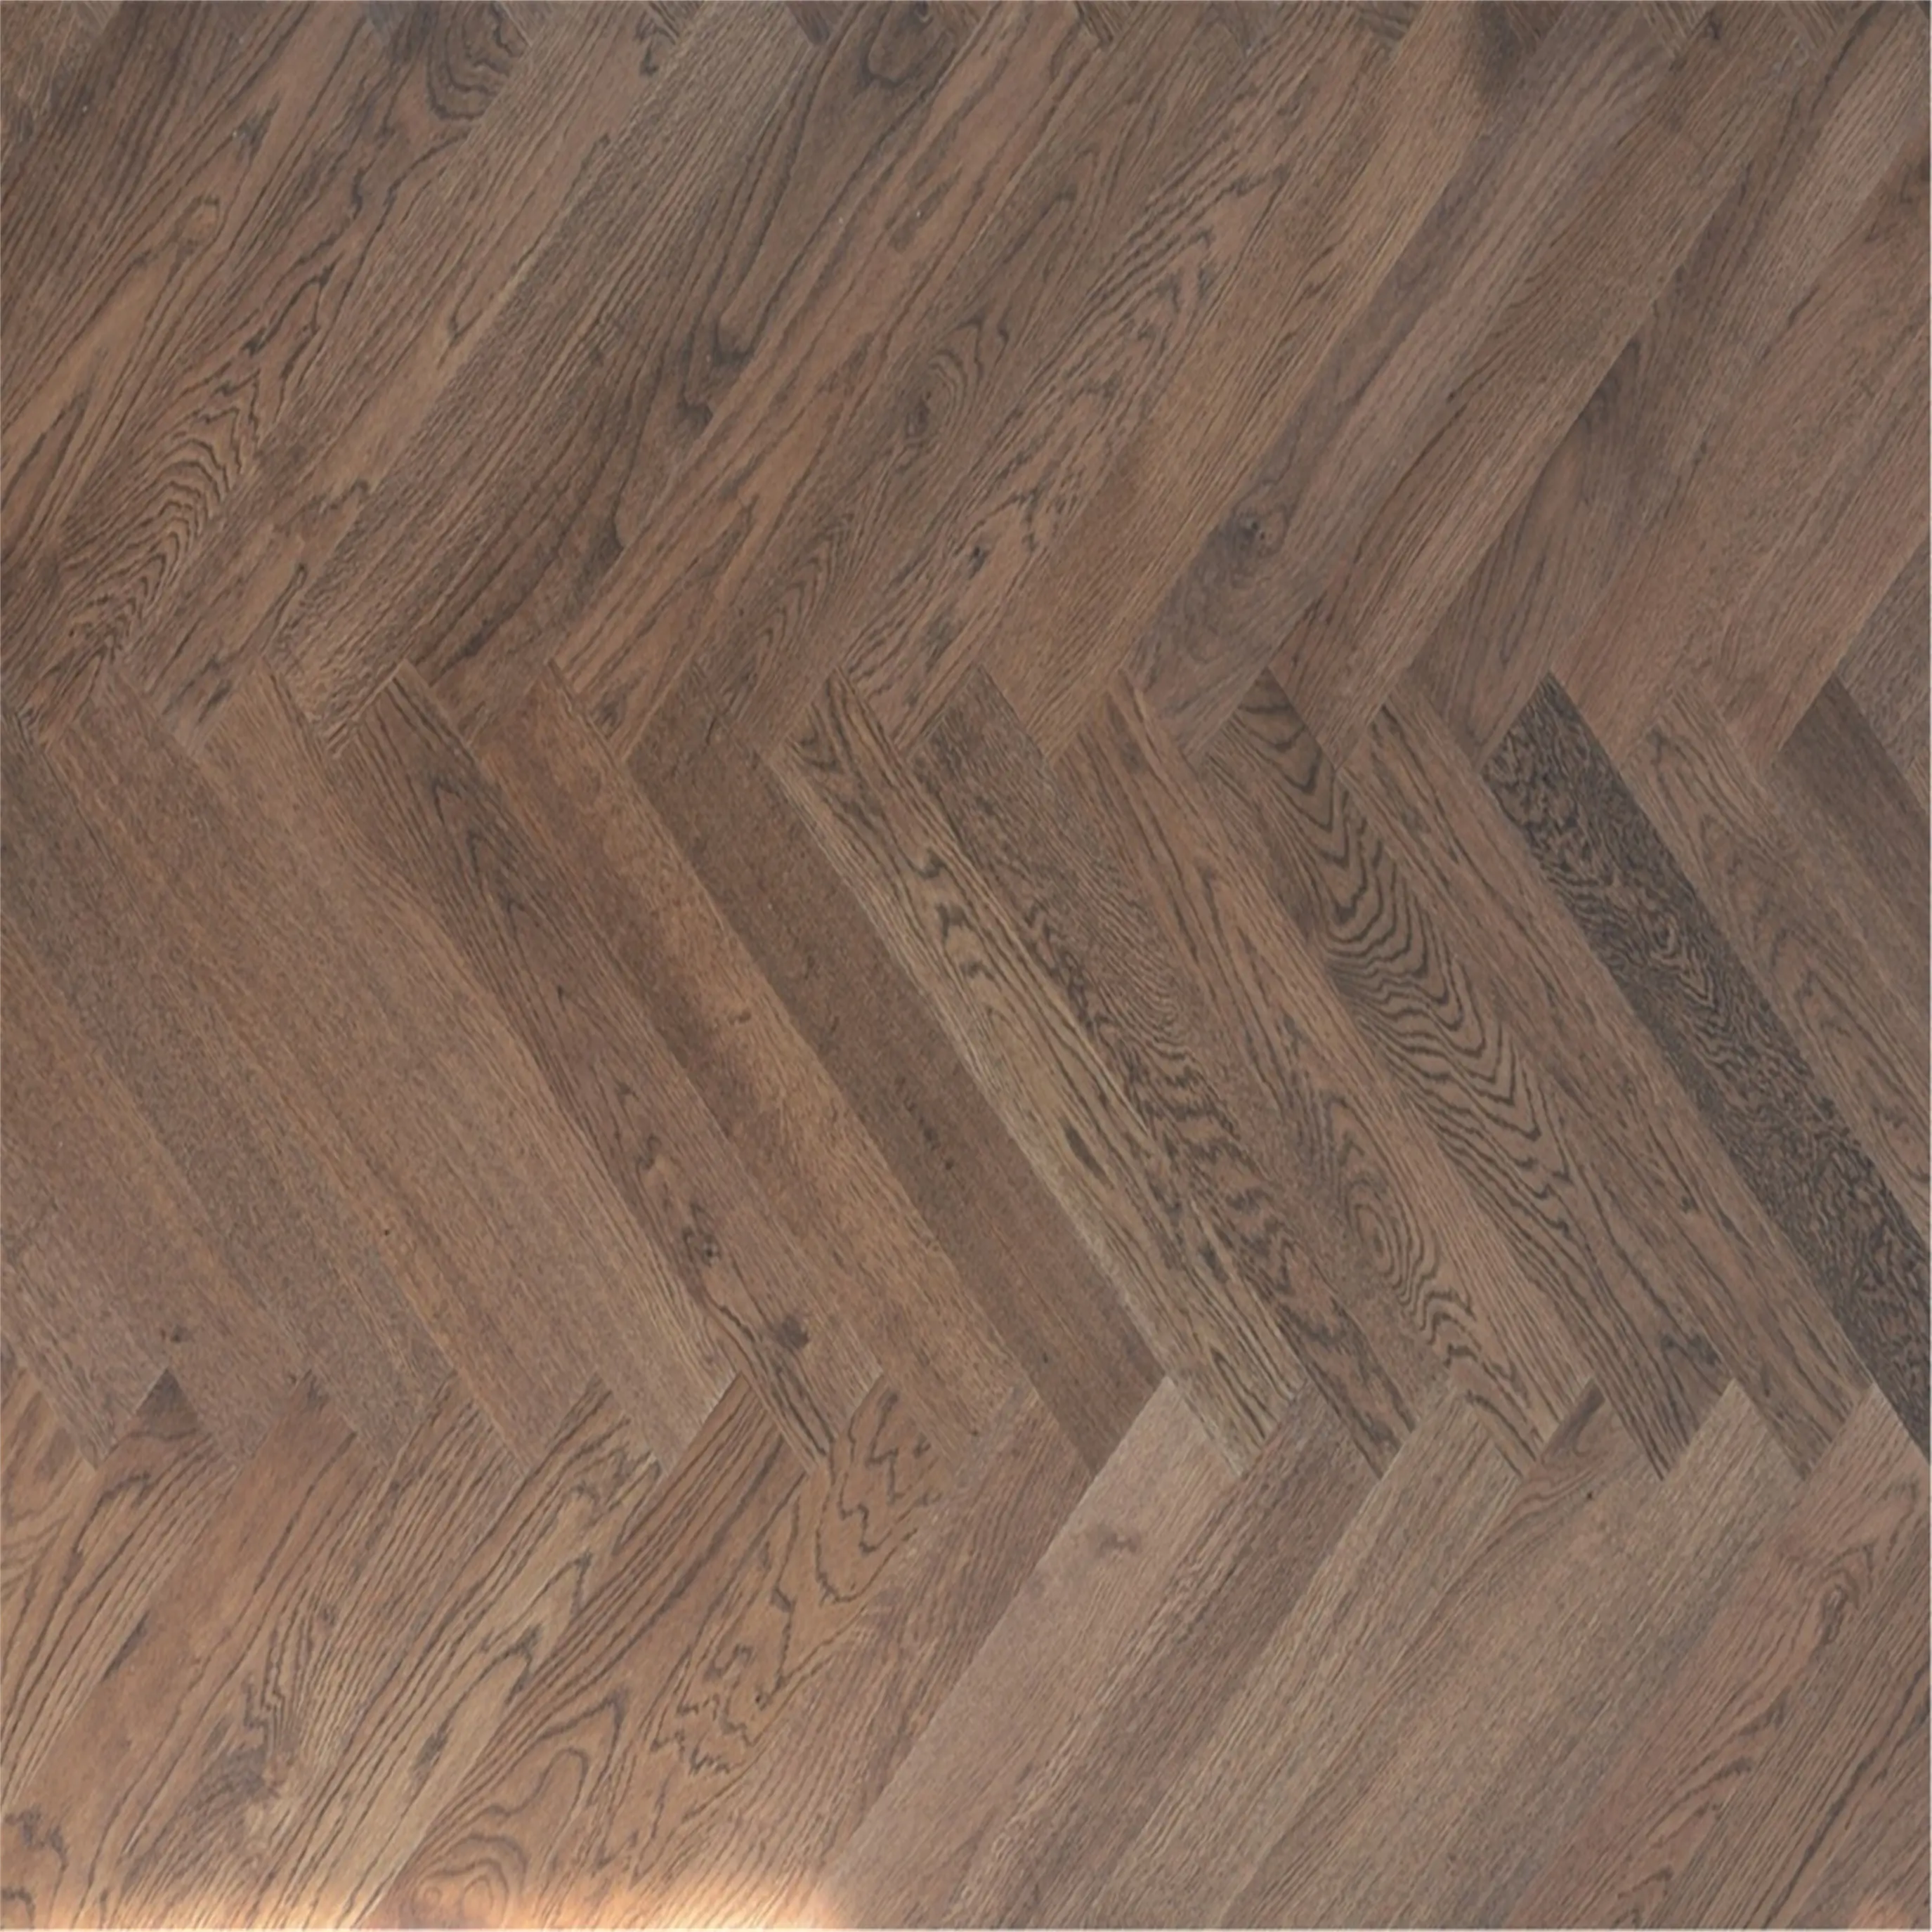 Giá rẻ ván ép gỗ sồi cổ điển thiết kế sàn gỗ herringbones gạch gỗ